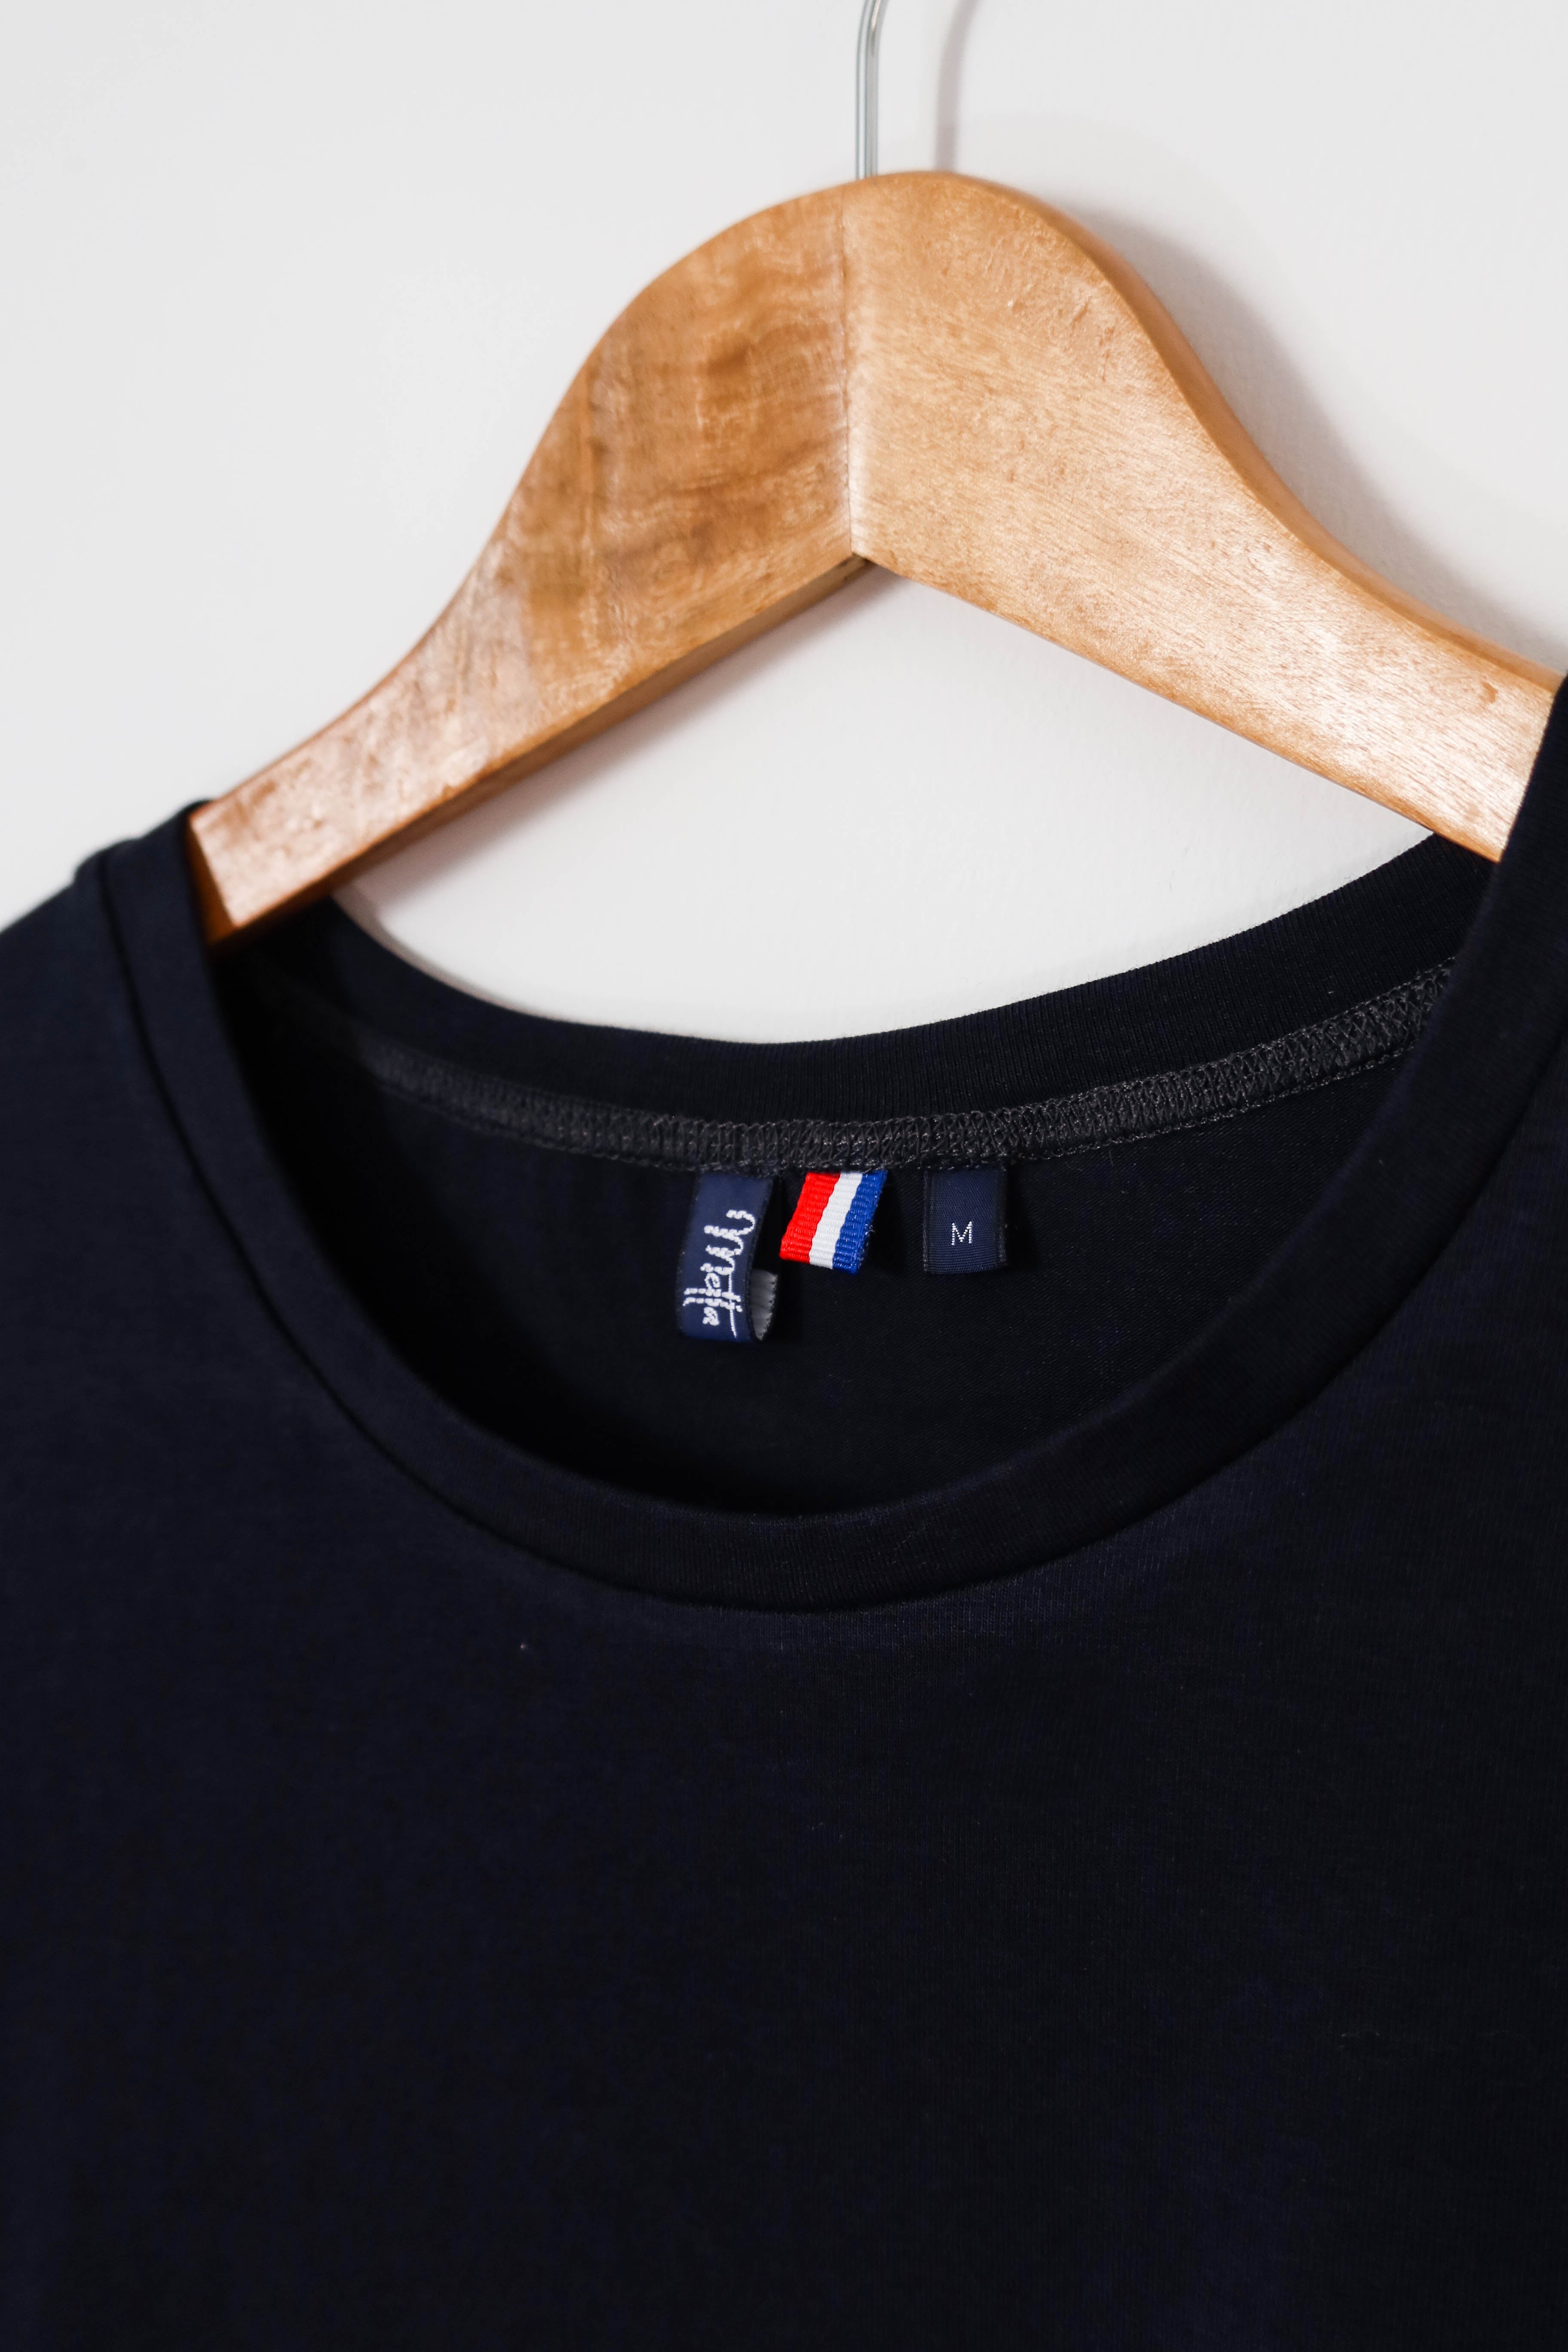 Zoom étiquette de l'encolure du t-shirt bleu marine fabriqué en France.